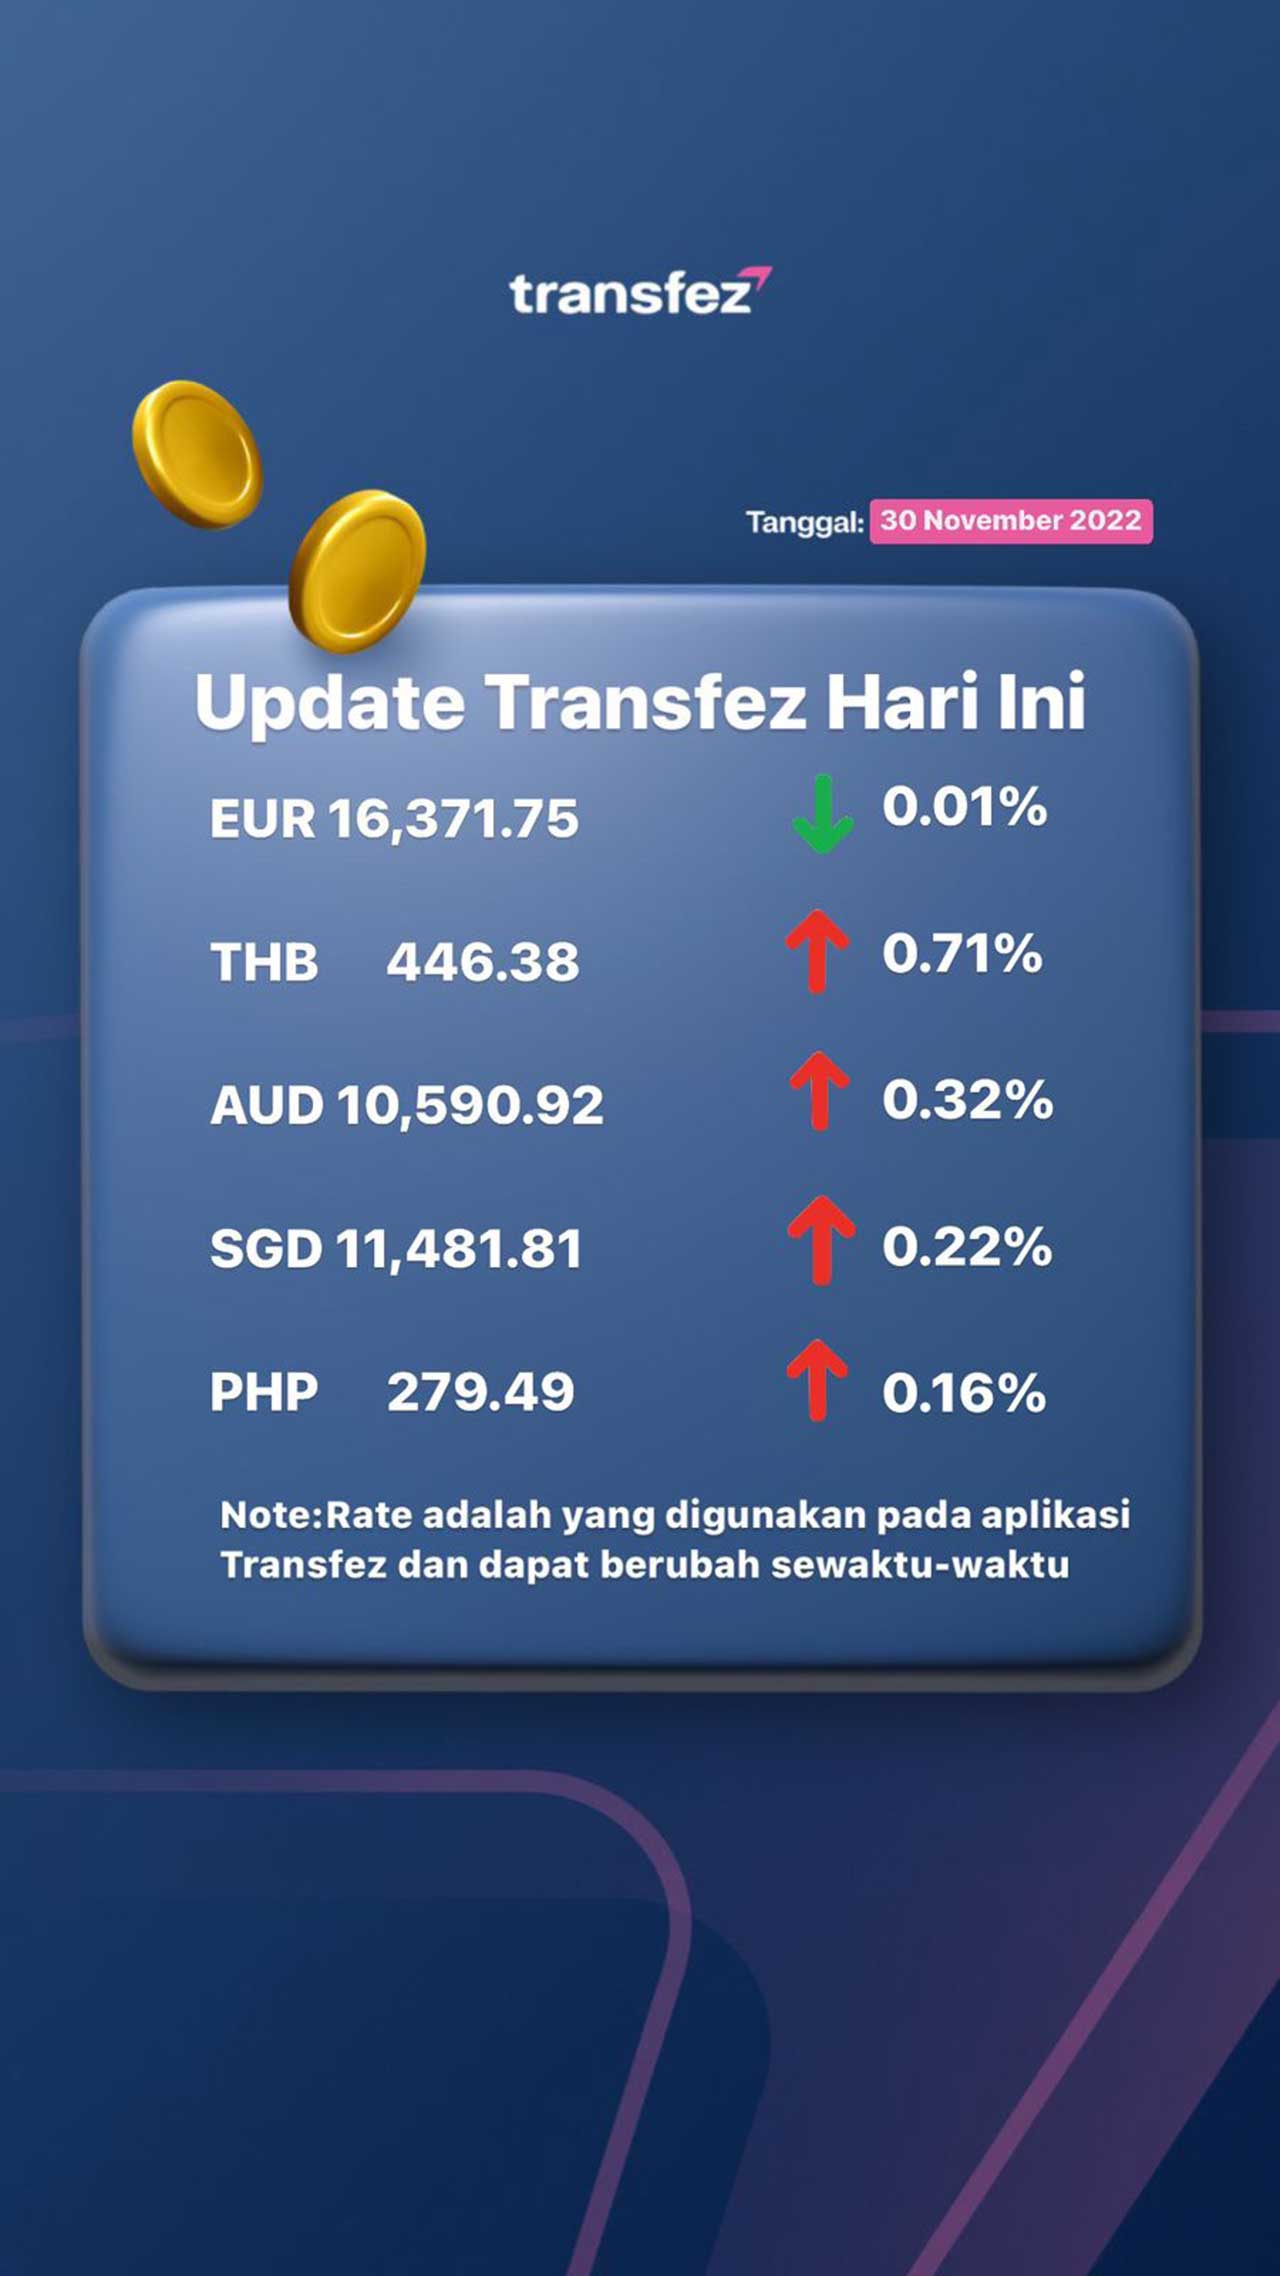 Update Rate Transfez Hari Ini 30 November 2022